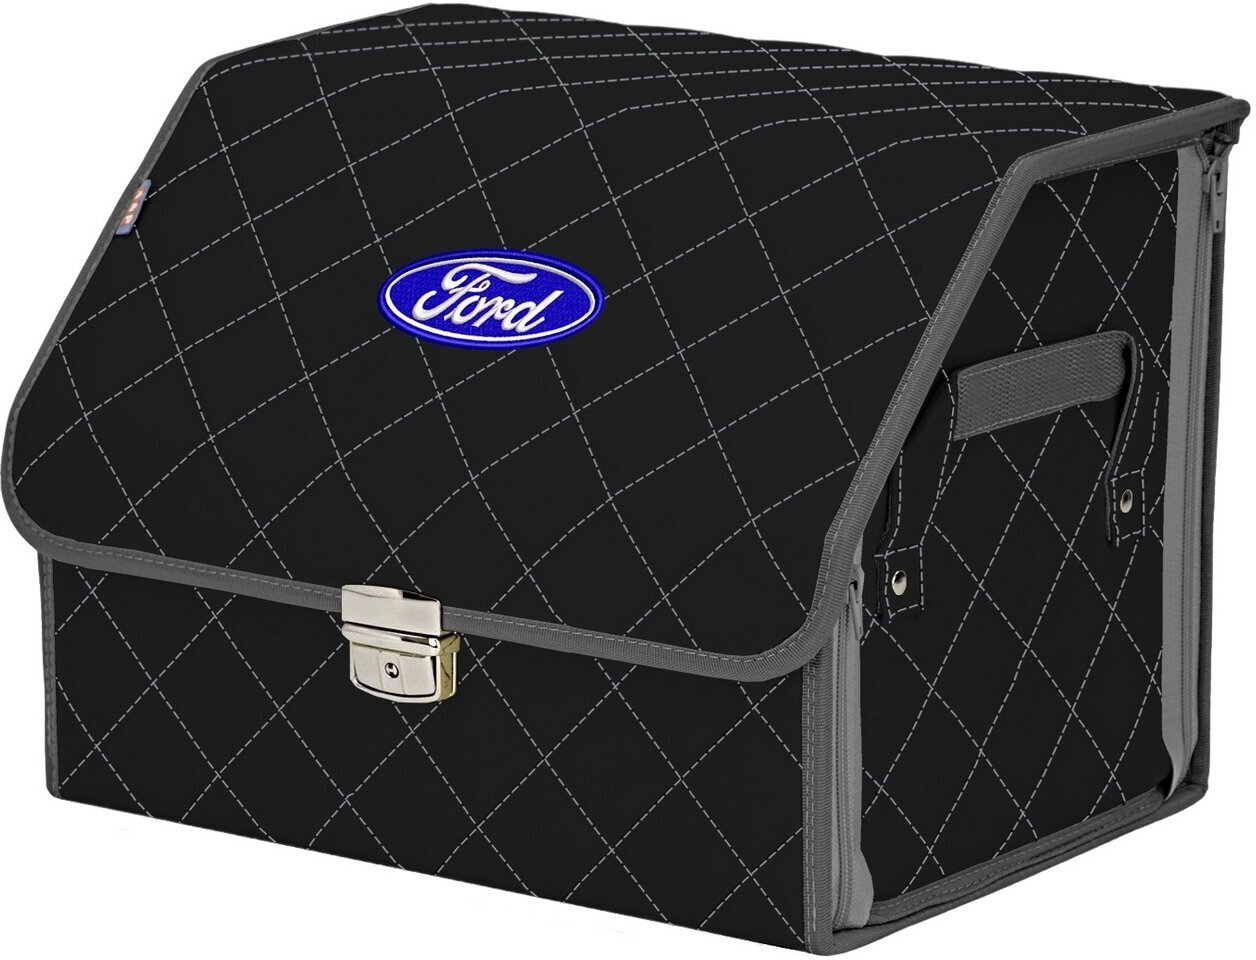 Органайзер-саквояж в багажник "Союз Премиум" (размер M). Цвет: черный с серой прострочкой Ромб и вышивкой Ford (Форд).